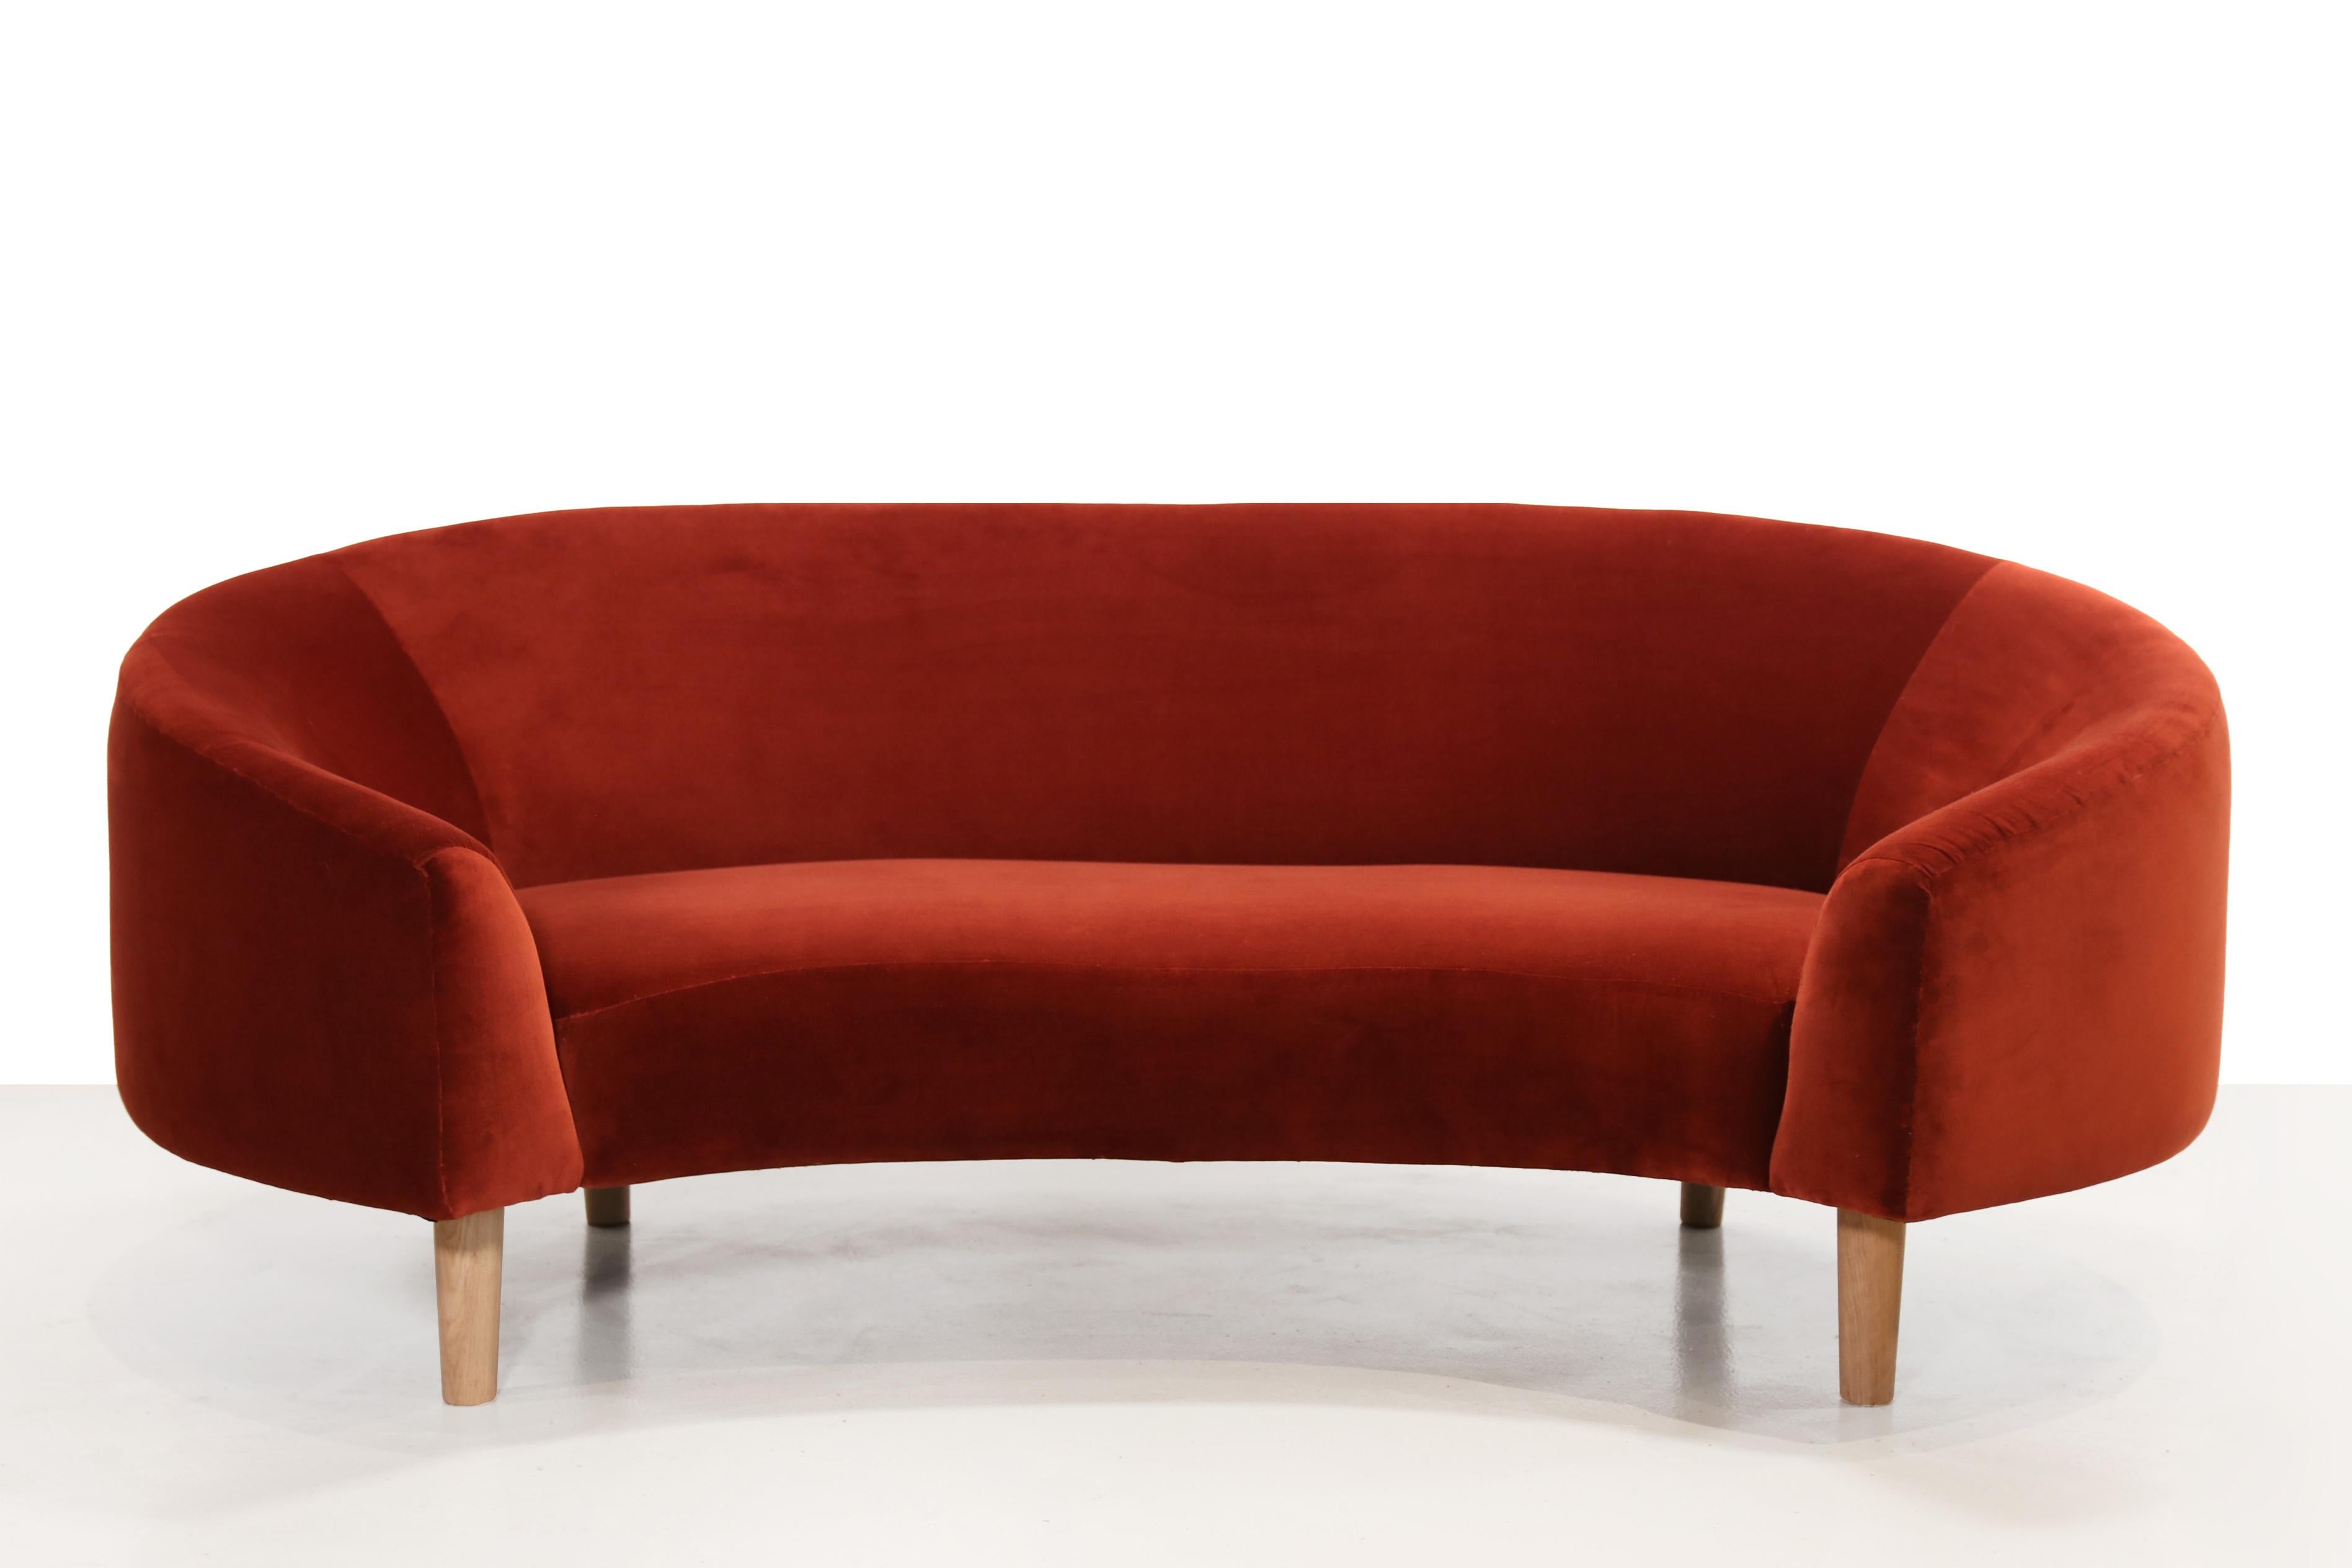 Ce banc vintage unique apporte de l'élégance à votre intérieur grâce à ses belles formes rondes. Il s'agit non seulement d'un meuble d'assise, mais aussi d'une œuvre d'art en soi. La forme incurvée rappelle un peu celle d'un croissant ou d'un